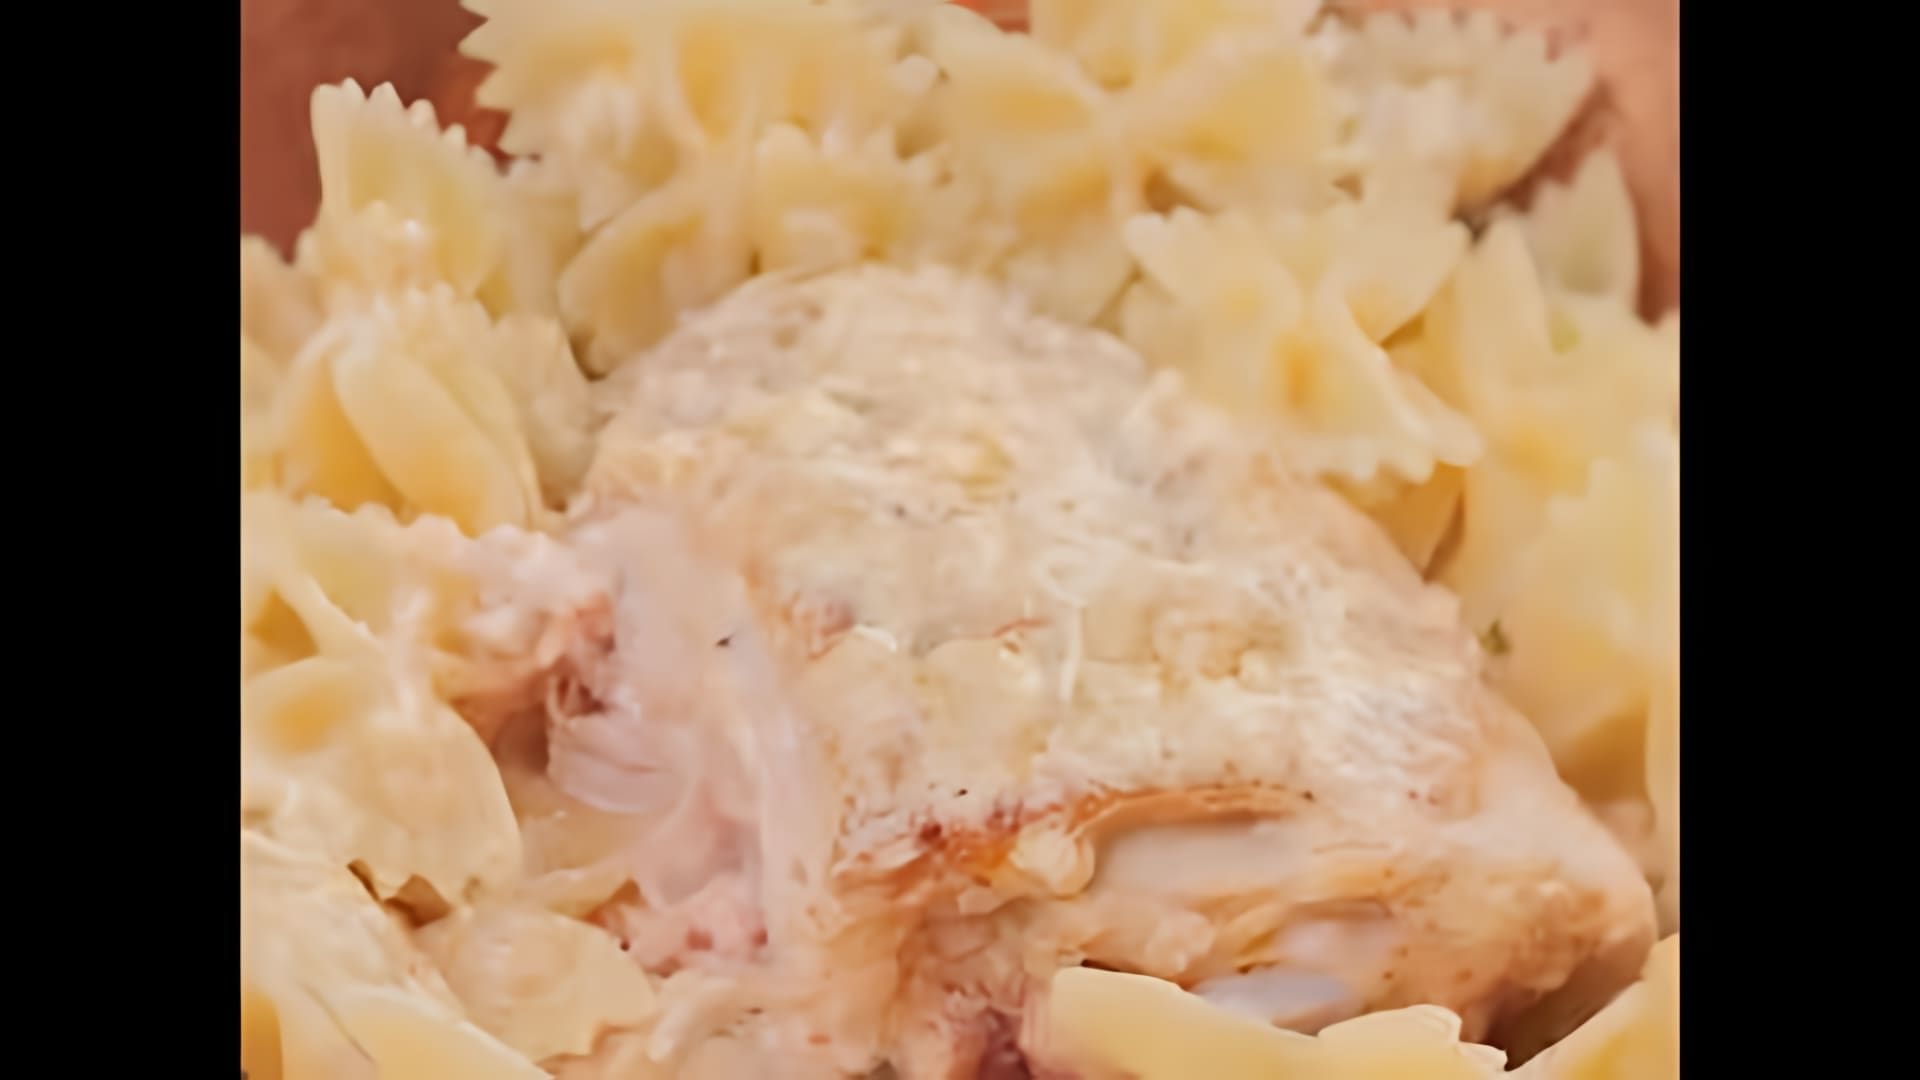 В этом видео-ролике демонстрируется процесс приготовления куриных бедер в сливочном соусе